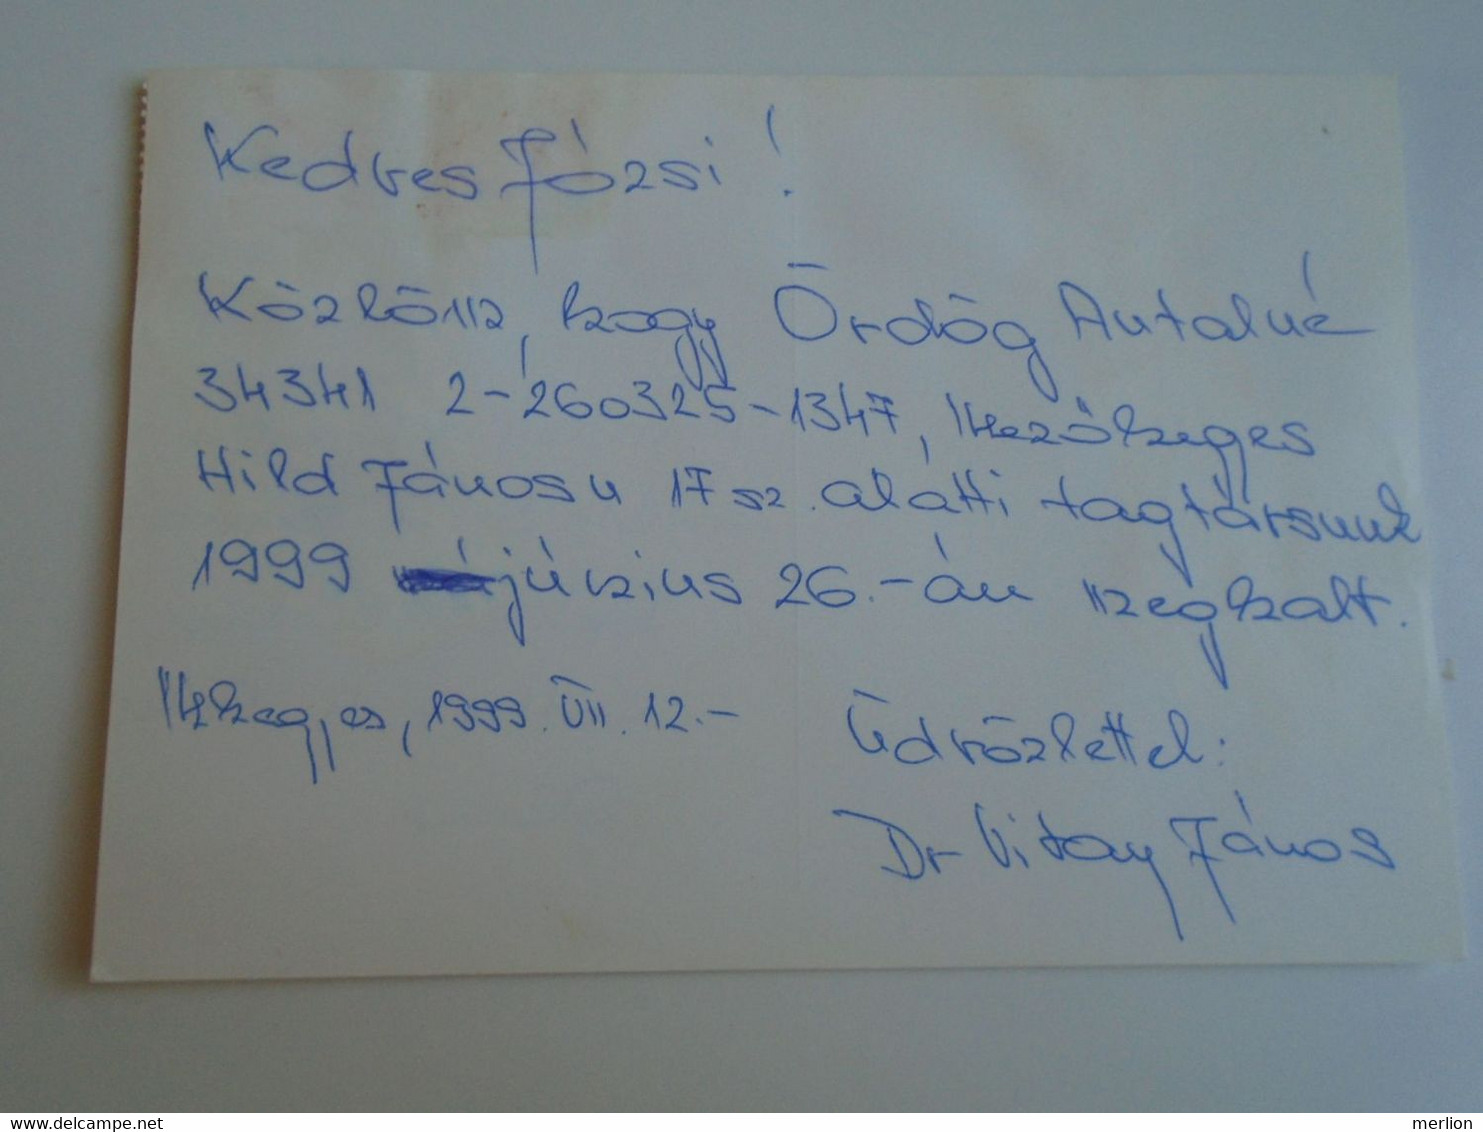 D193284    Hungary  - Postcard  - Levelezőlap  MVGYOSZ Békés Megye  - 1999 Mezőhegyes - Briefe U. Dokumente